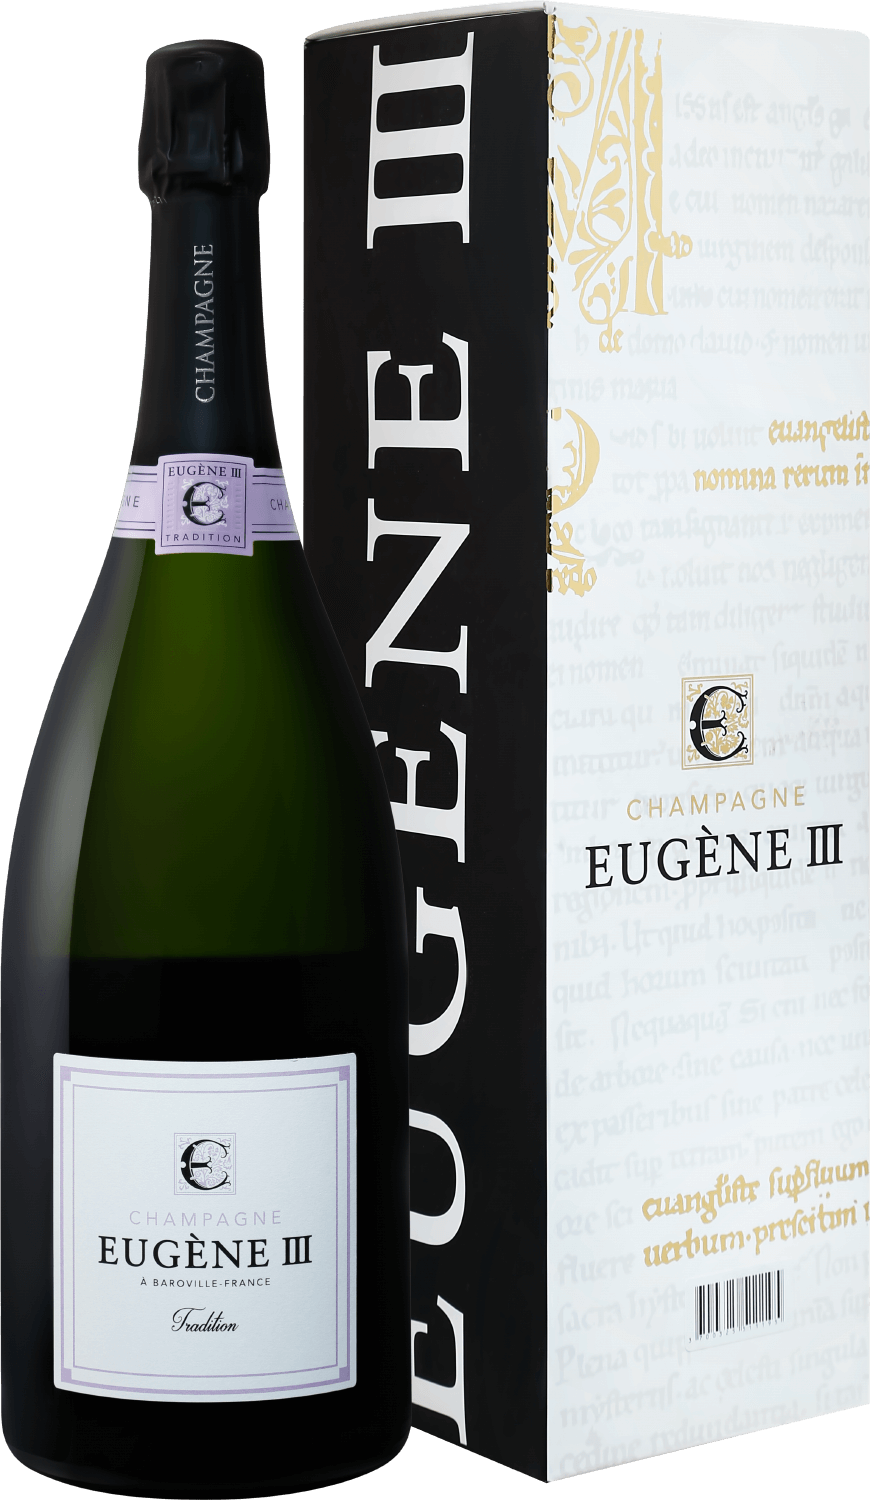 Eugene III Tradition Brut Champagne АOC Coopérative Vinicole de la Région de Baroville (gift box) barfontarc blanc de noirs brut champagne aoc coopérative vinicole de la région de baroville